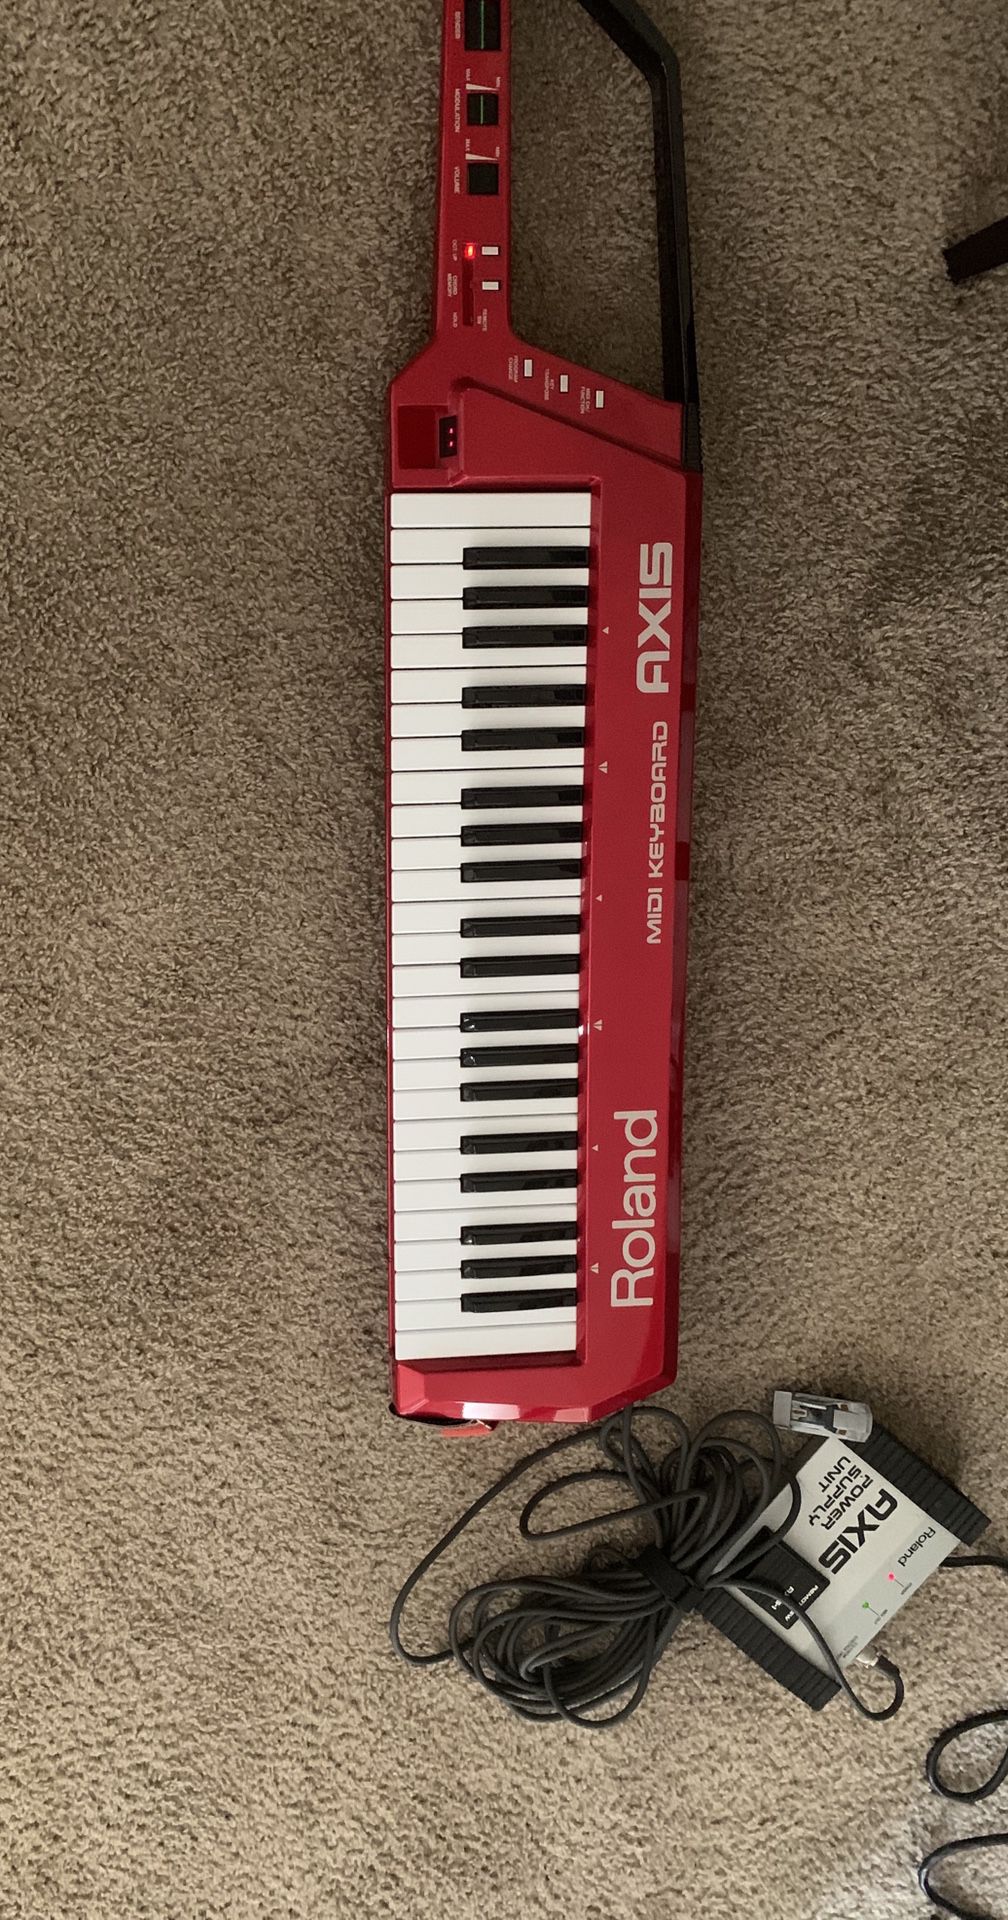 Roland Axis MIDI keyboard